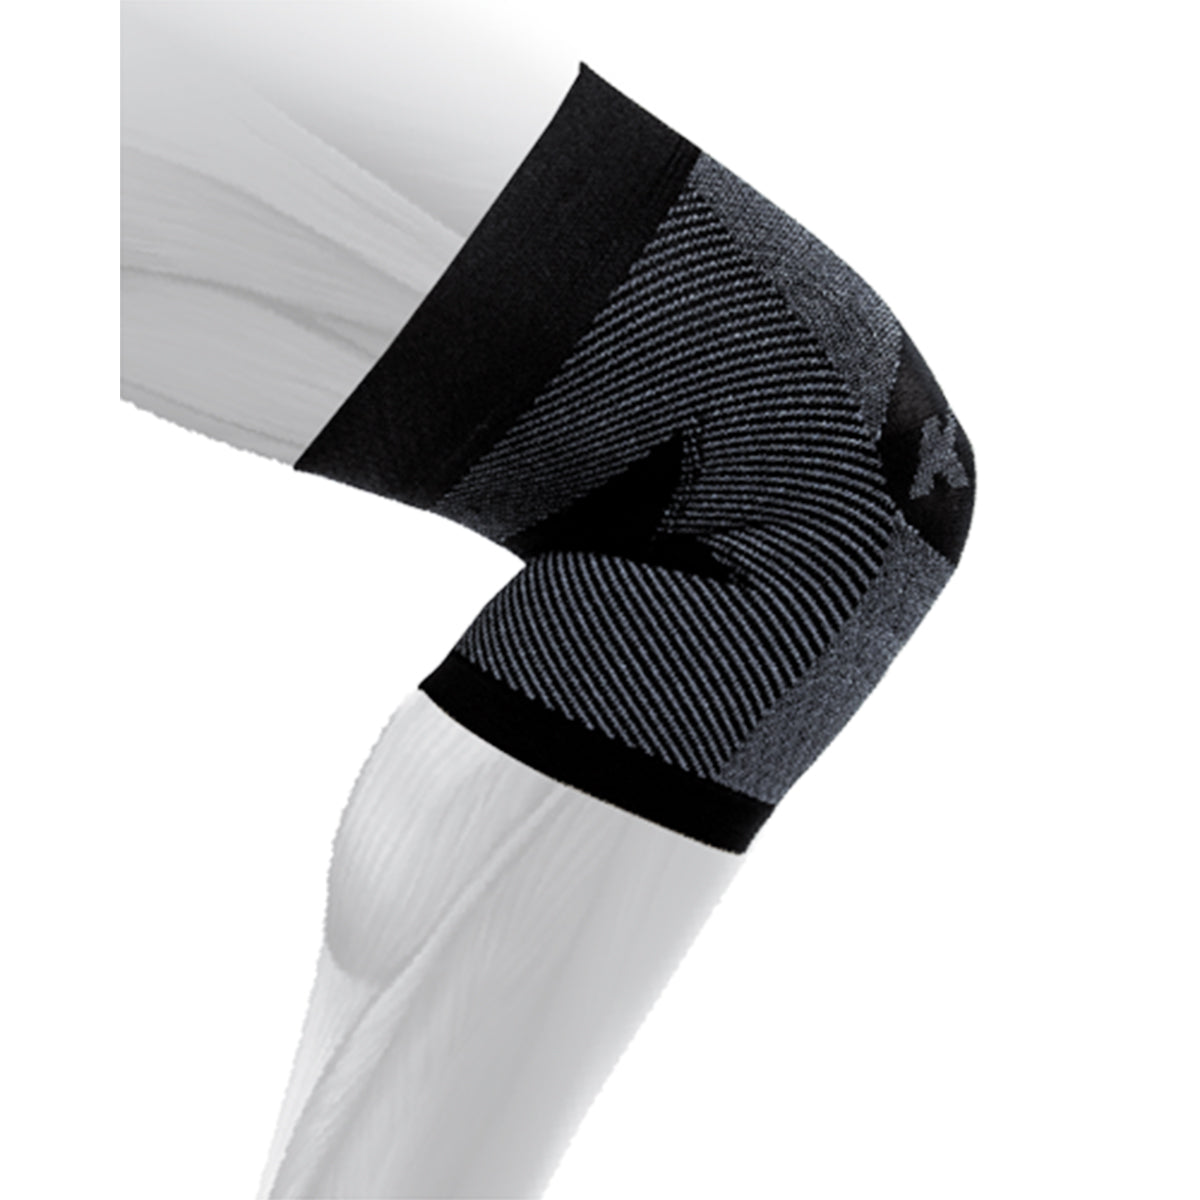 OS1st KS7 Performance Knee Sleeve & KS7+ Adjustable Performance Knee Sleeve  - C. Turner Medical